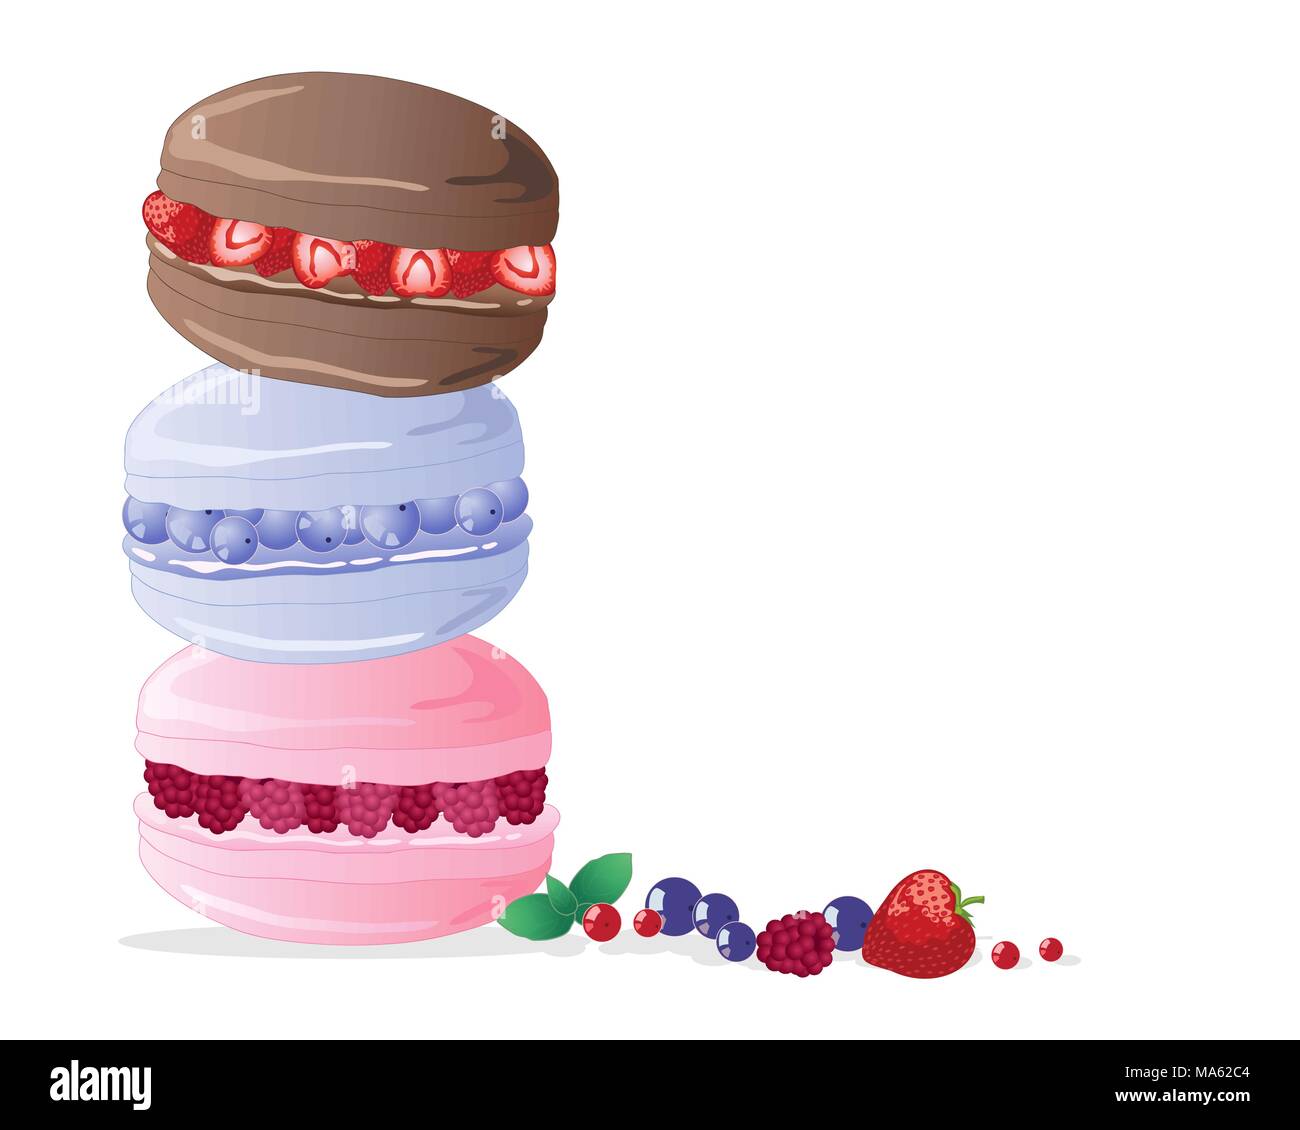 Un vecteur illustration en format eps 10 de trois macarons rempli de fraises bleuets et framboises dans une tour sur un fond blanc Illustration de Vecteur